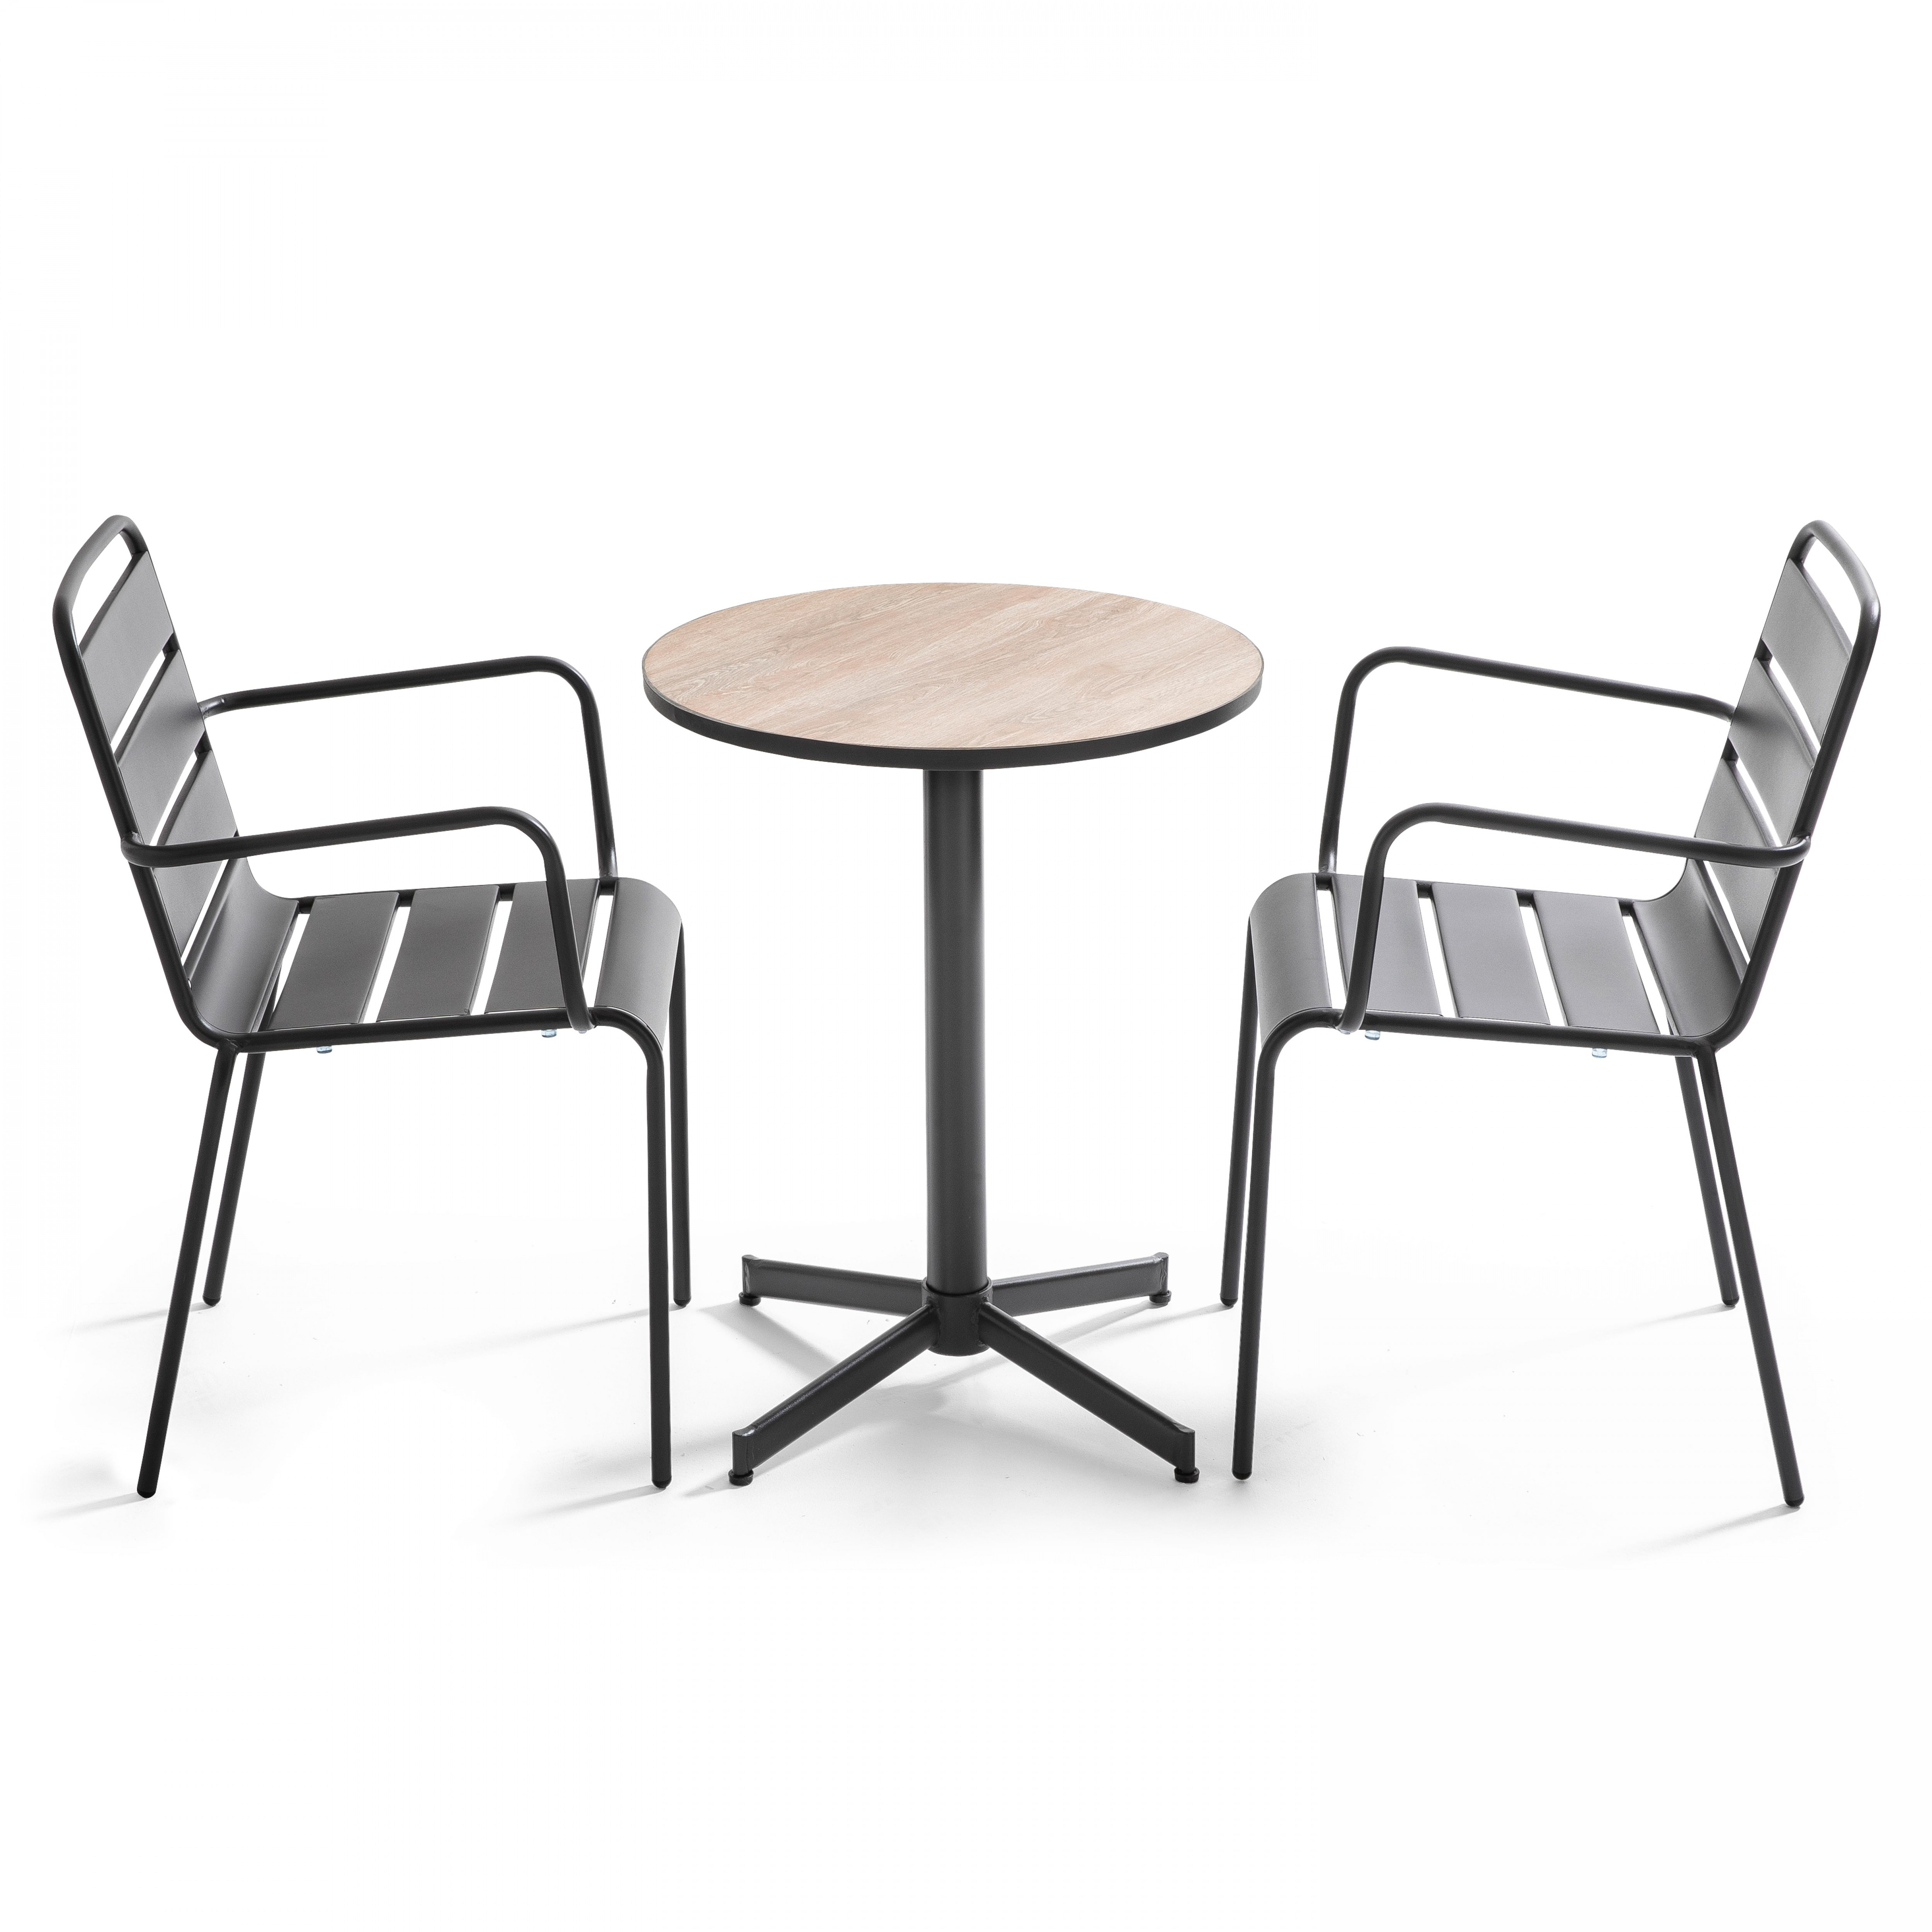 Ensemble table ronde avec plateau en céramique (ø60 x 72 cm) et 2 chaises avec accoudoirs en métal